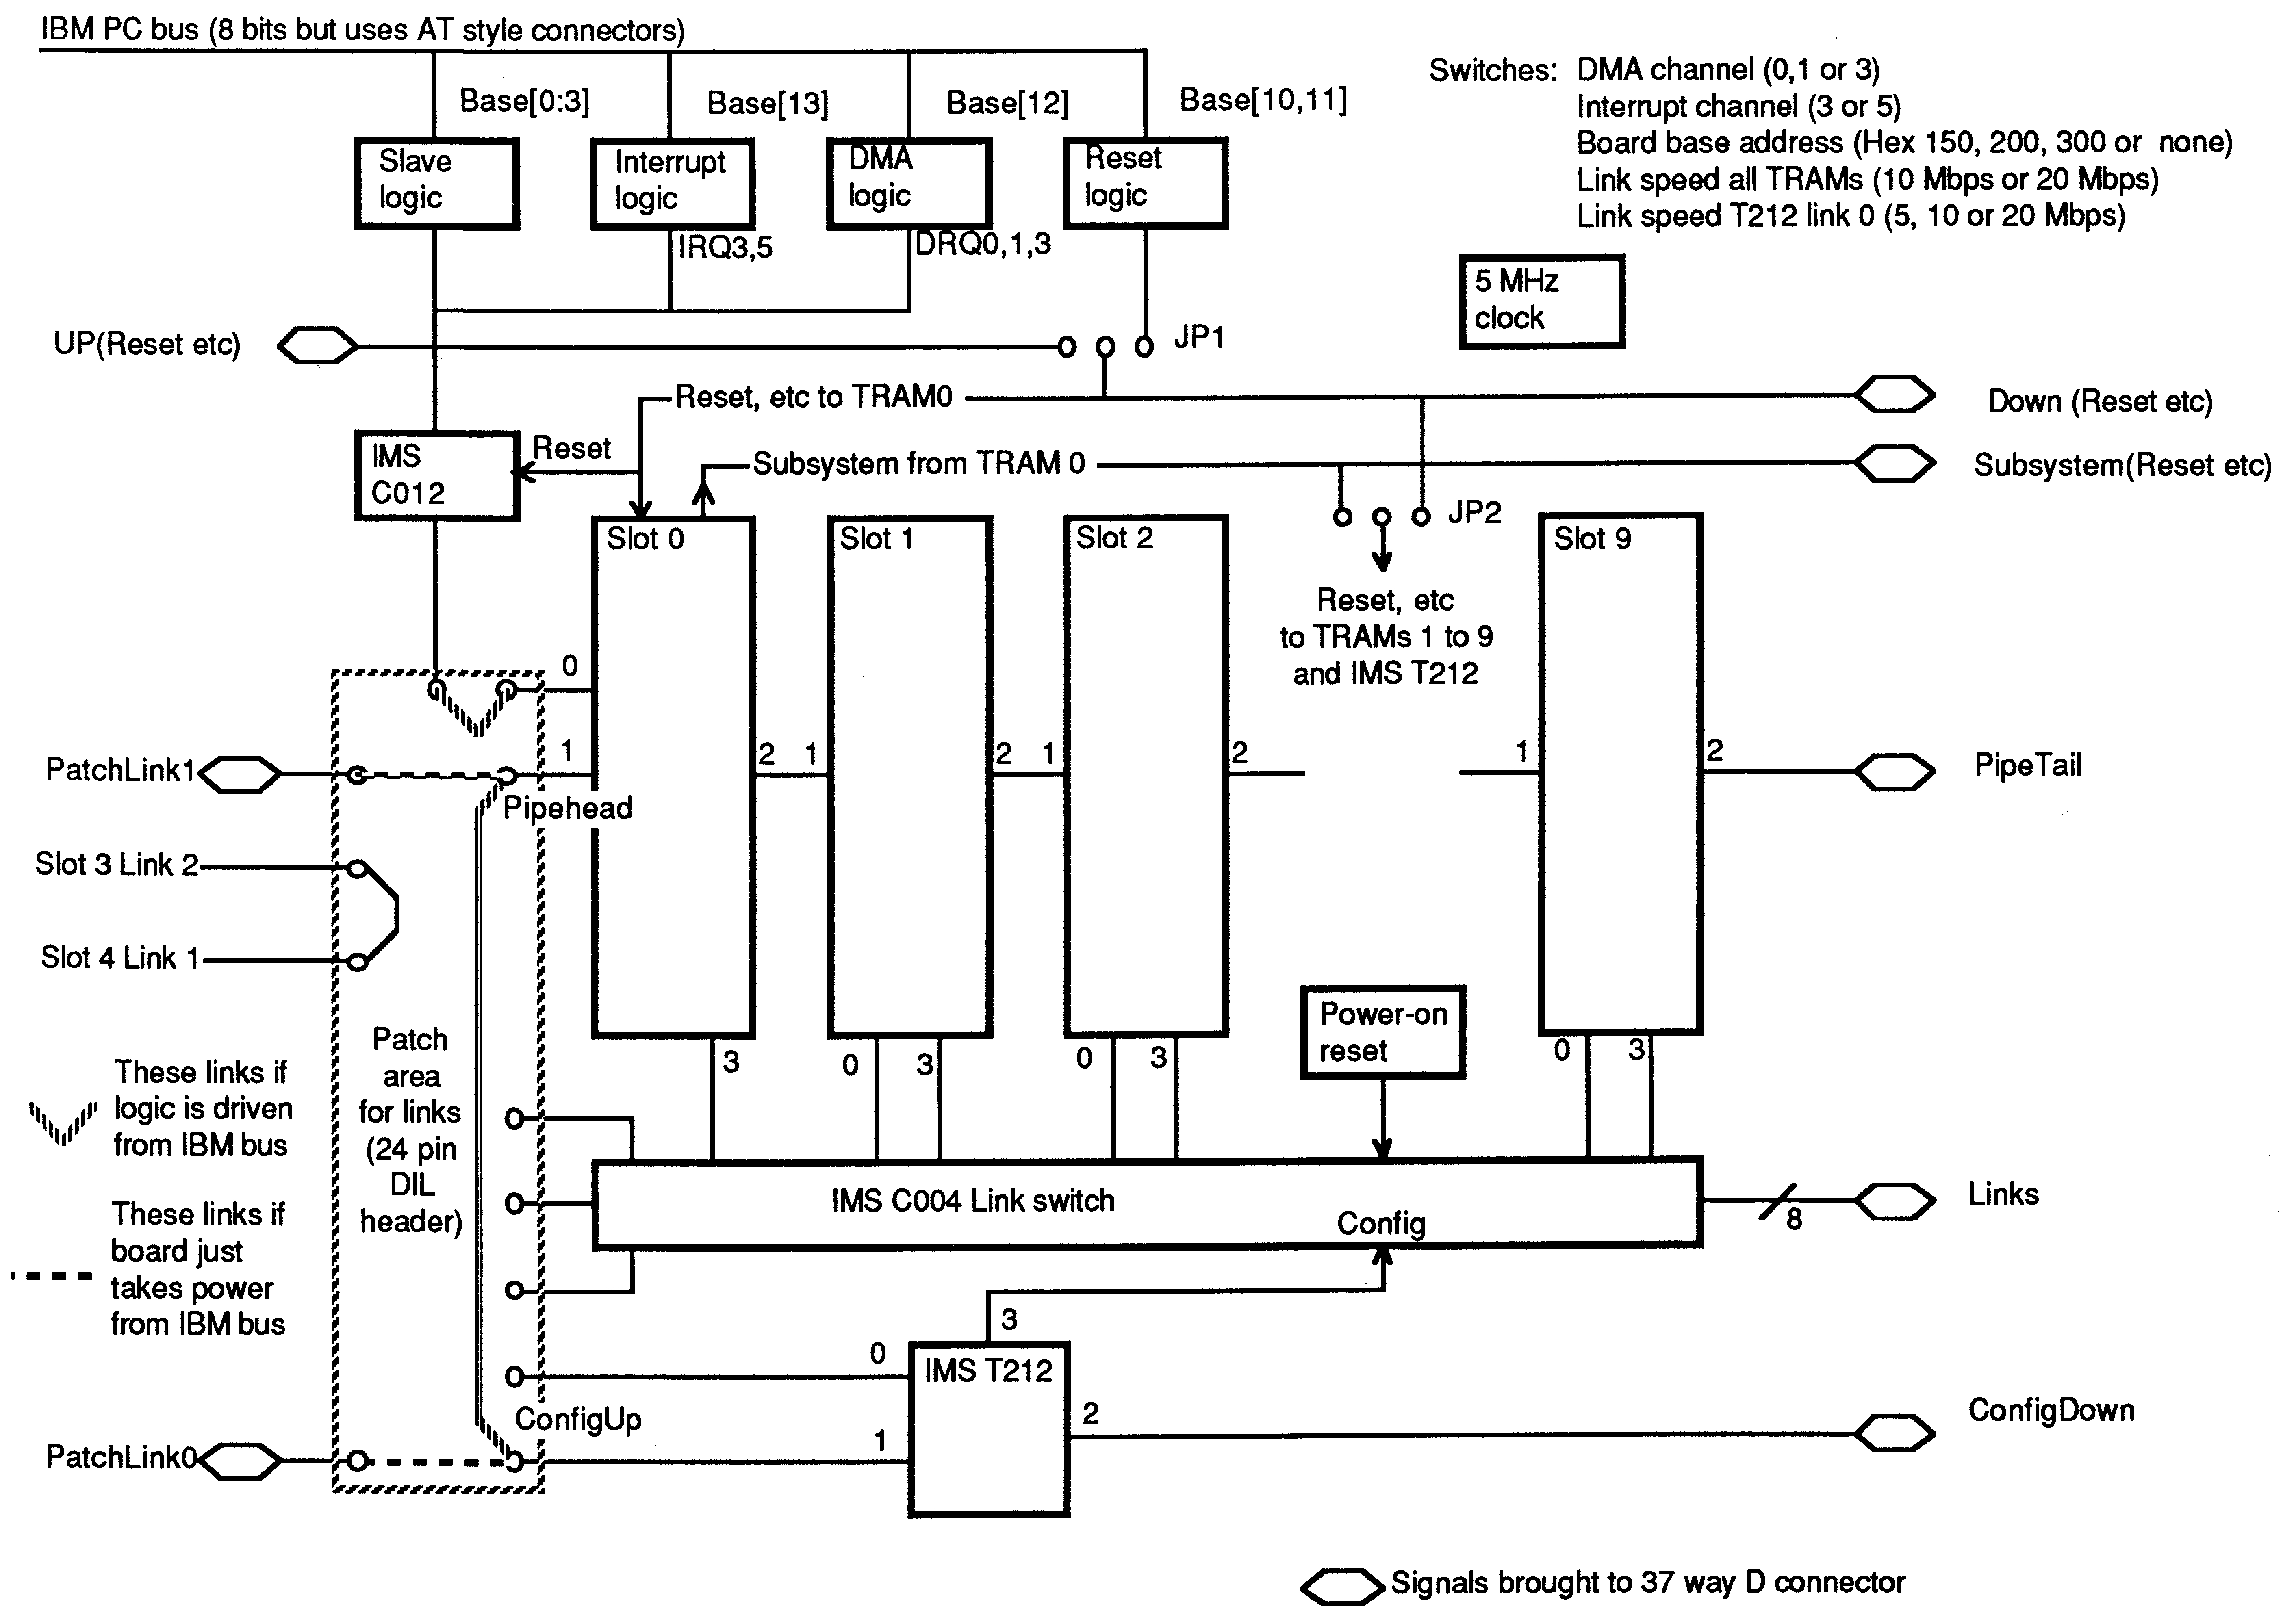 IMS B008 Functional Block
Diagram